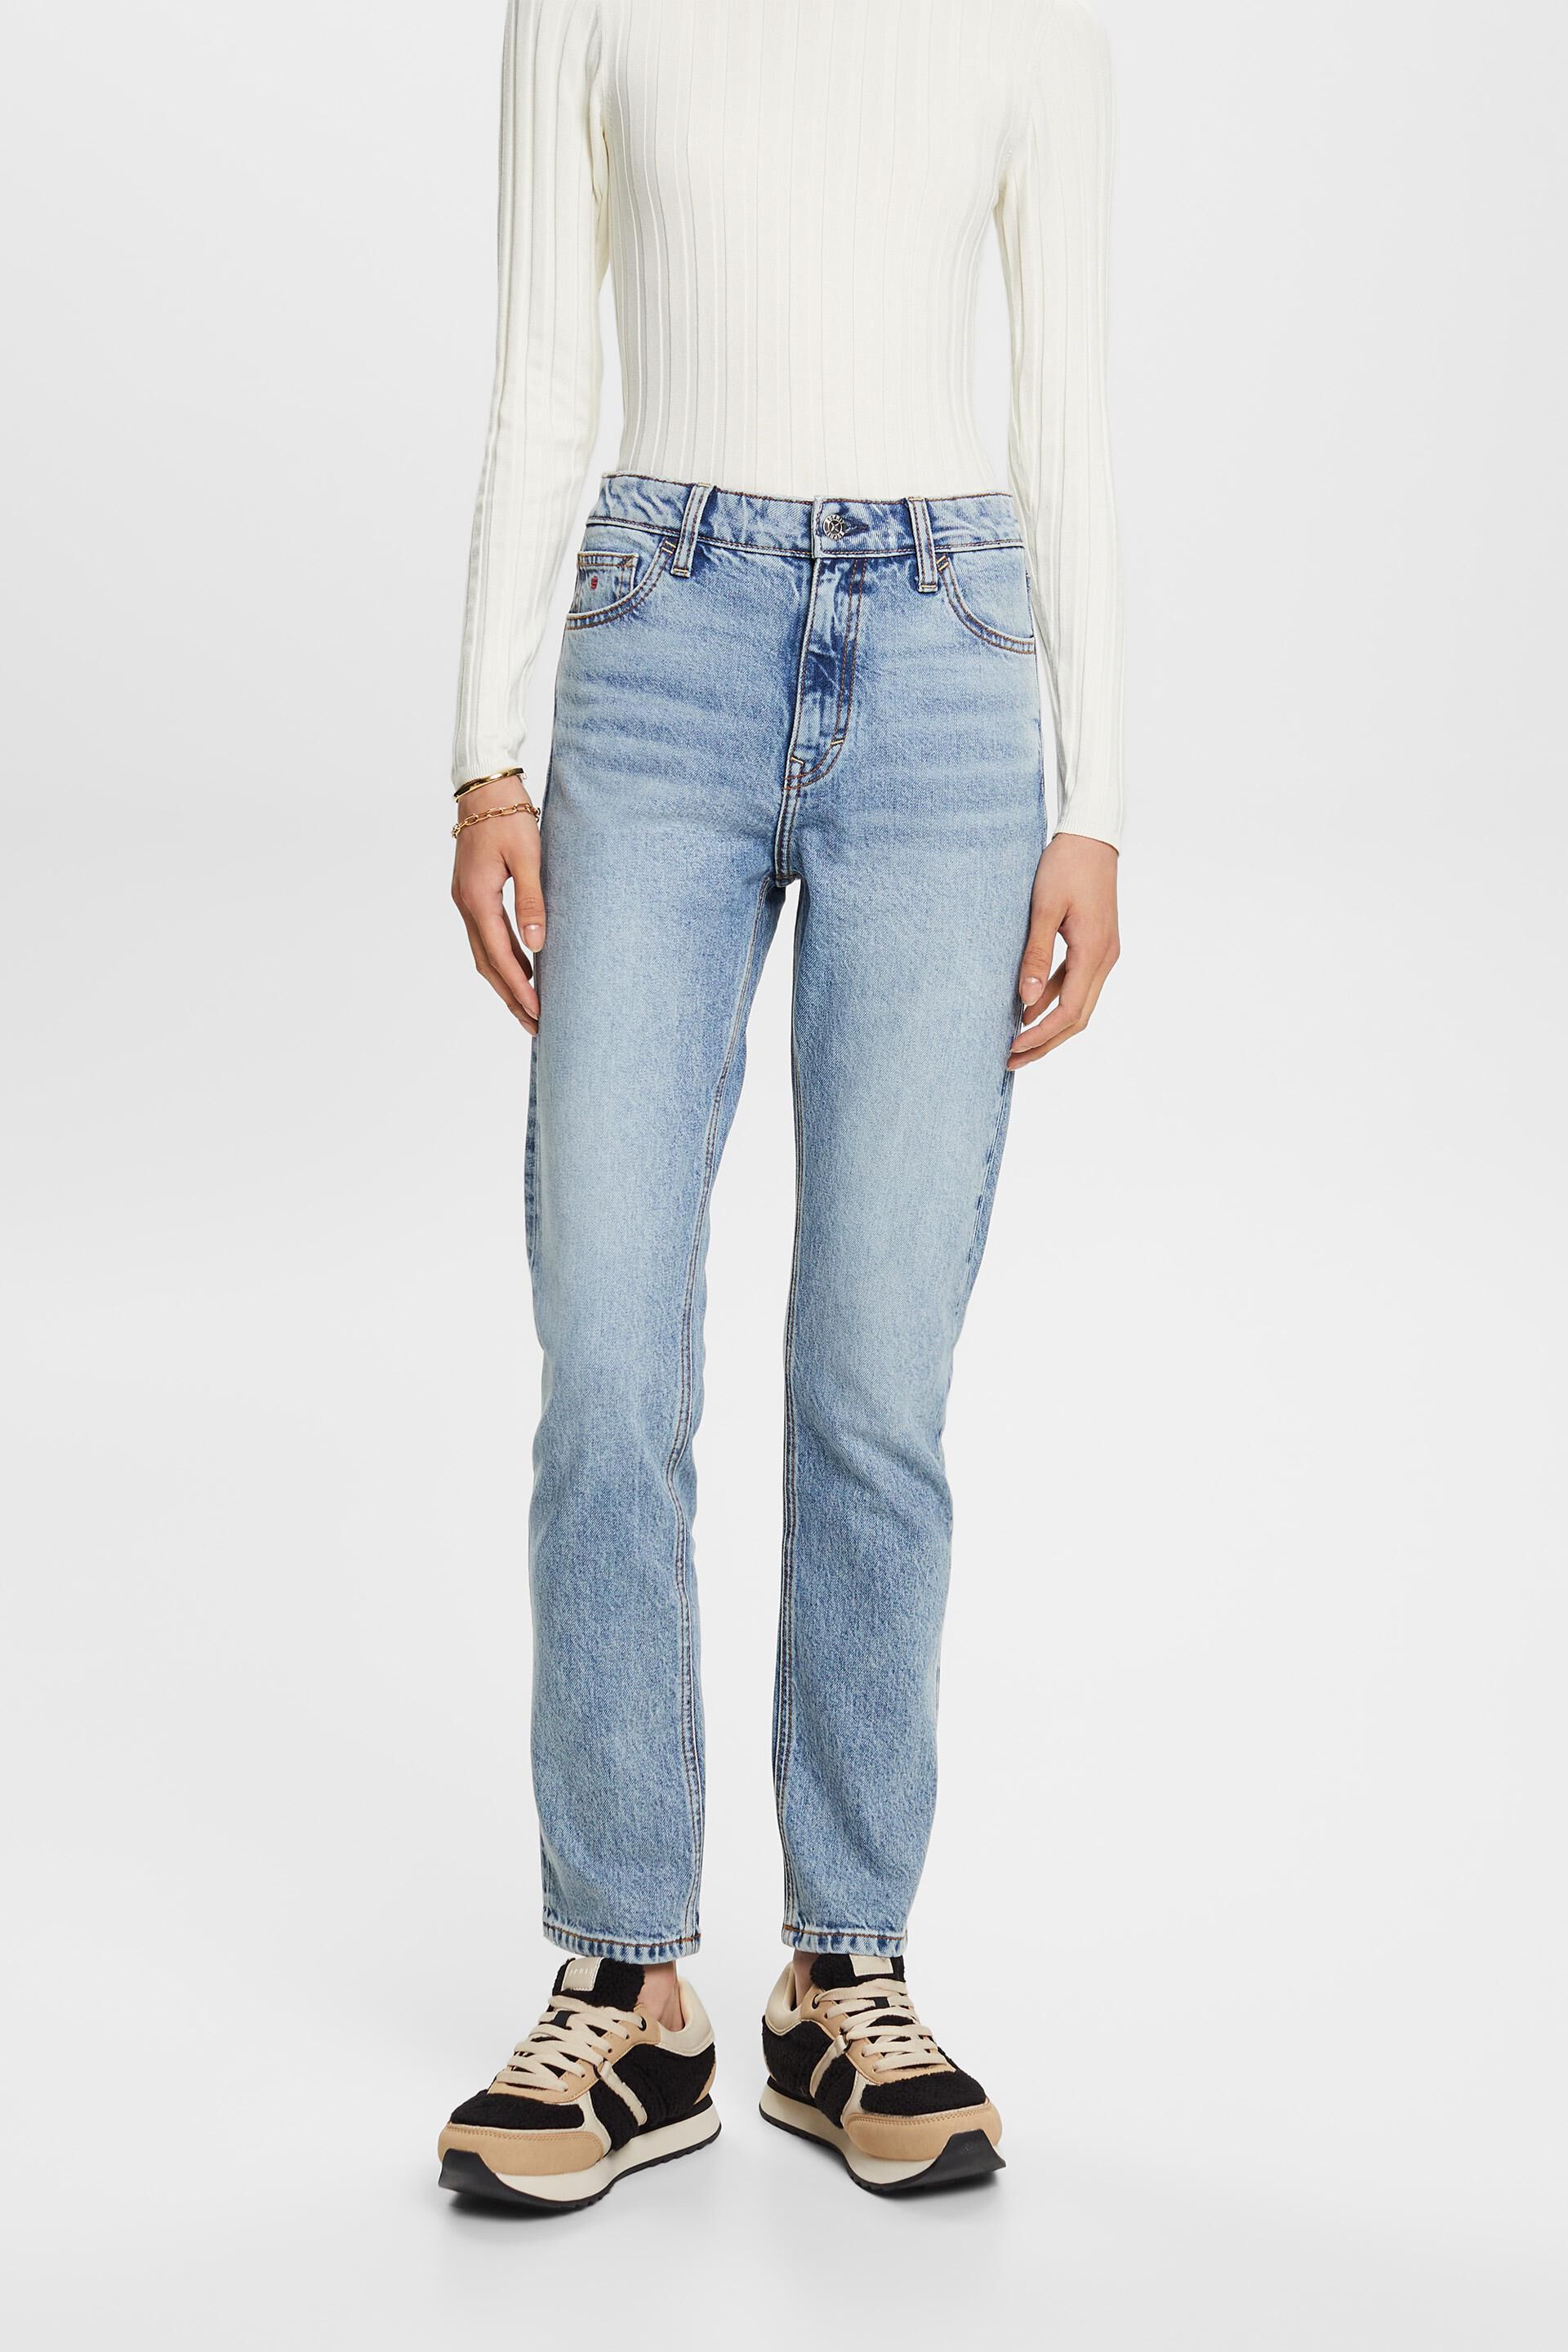 Esprit Damen Retro High-Rise Slim Jeans